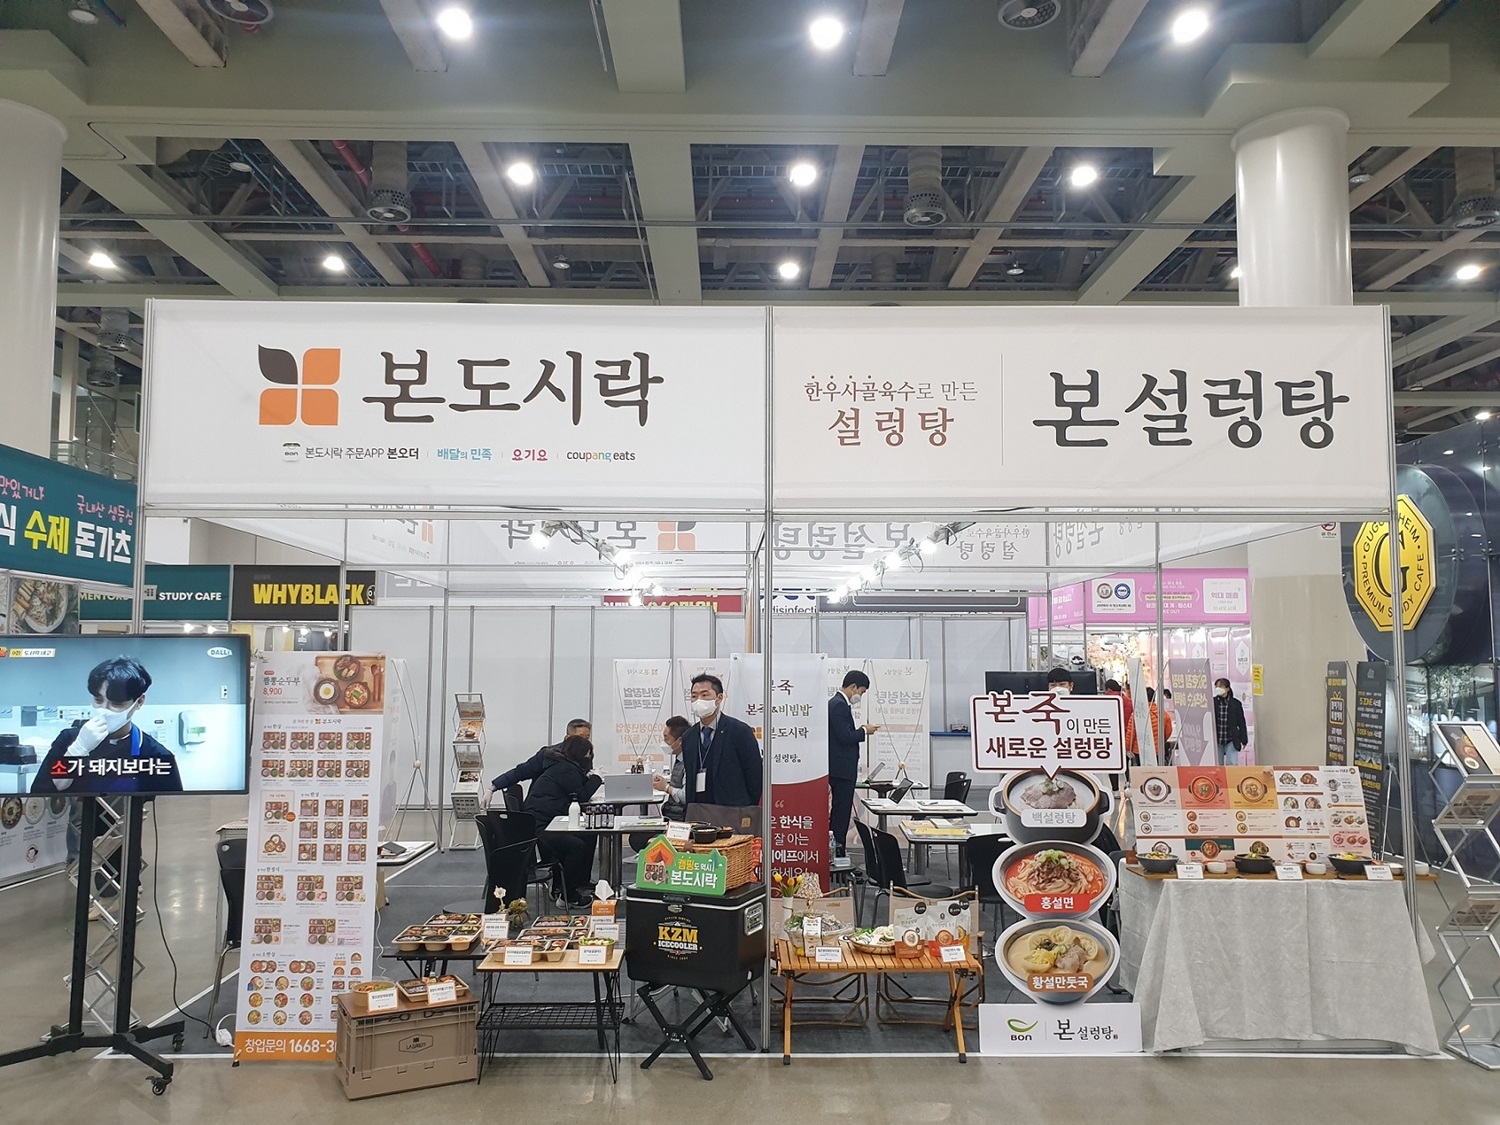 본아이에프, 본죽&비빔밥 등 4개 브랜드 통합 창업설명회 개최